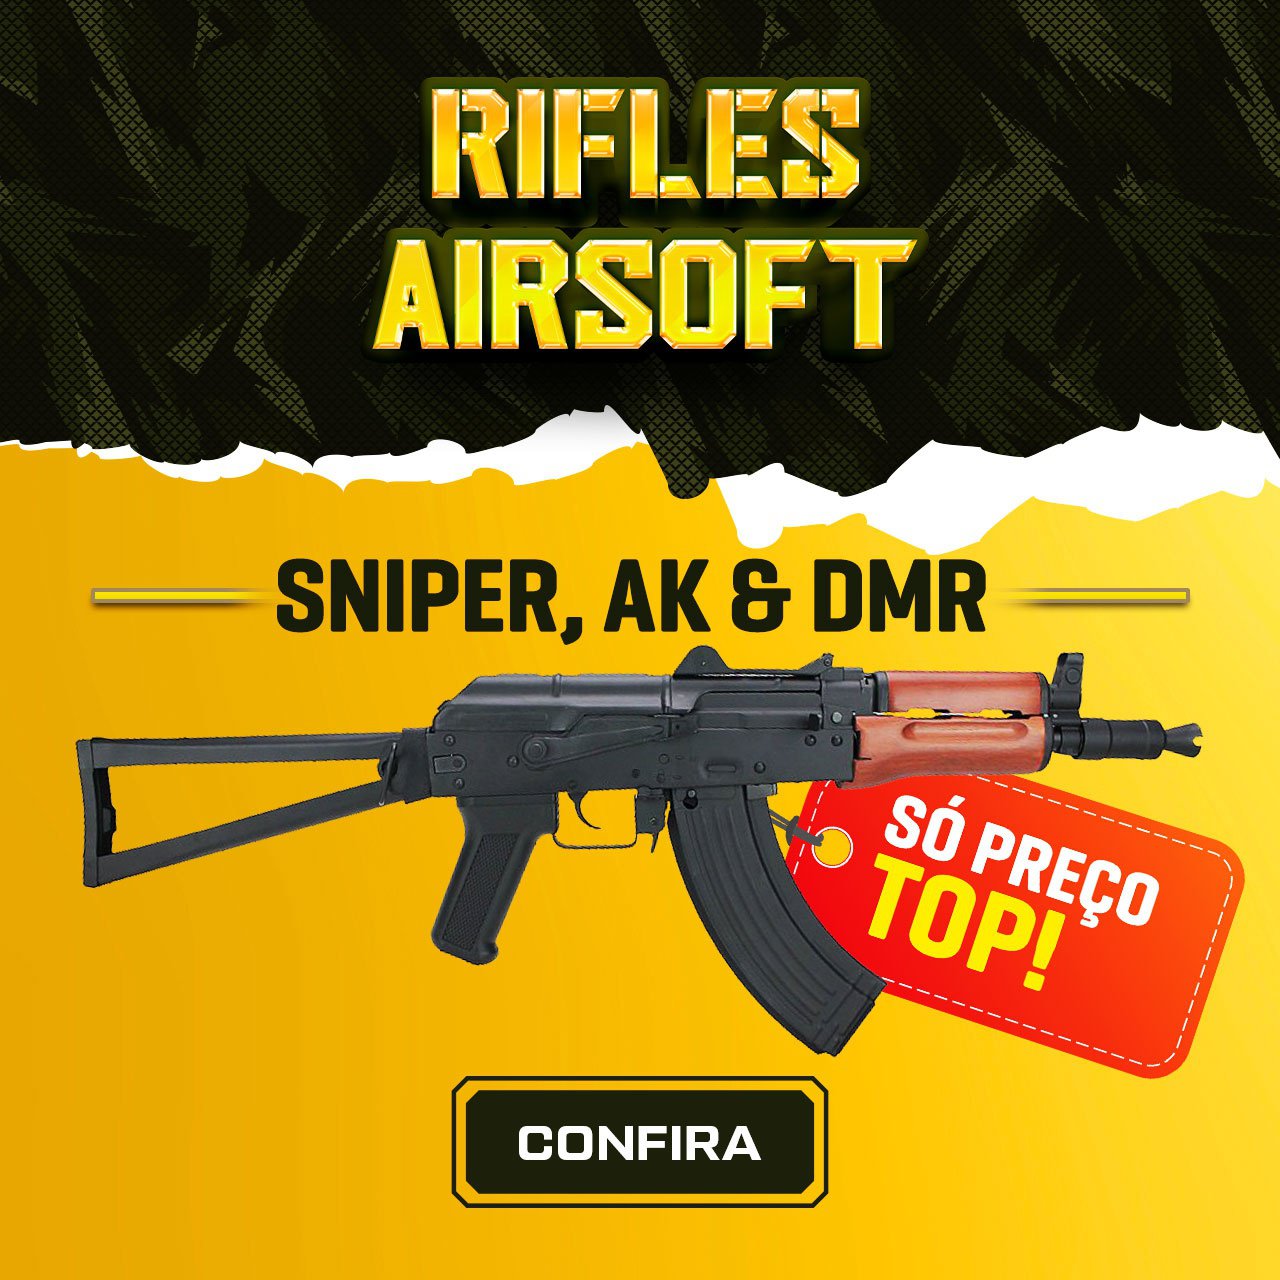 Rifles Airsoft - Seleção Sniper, AK & DMR - Só preço TOP!